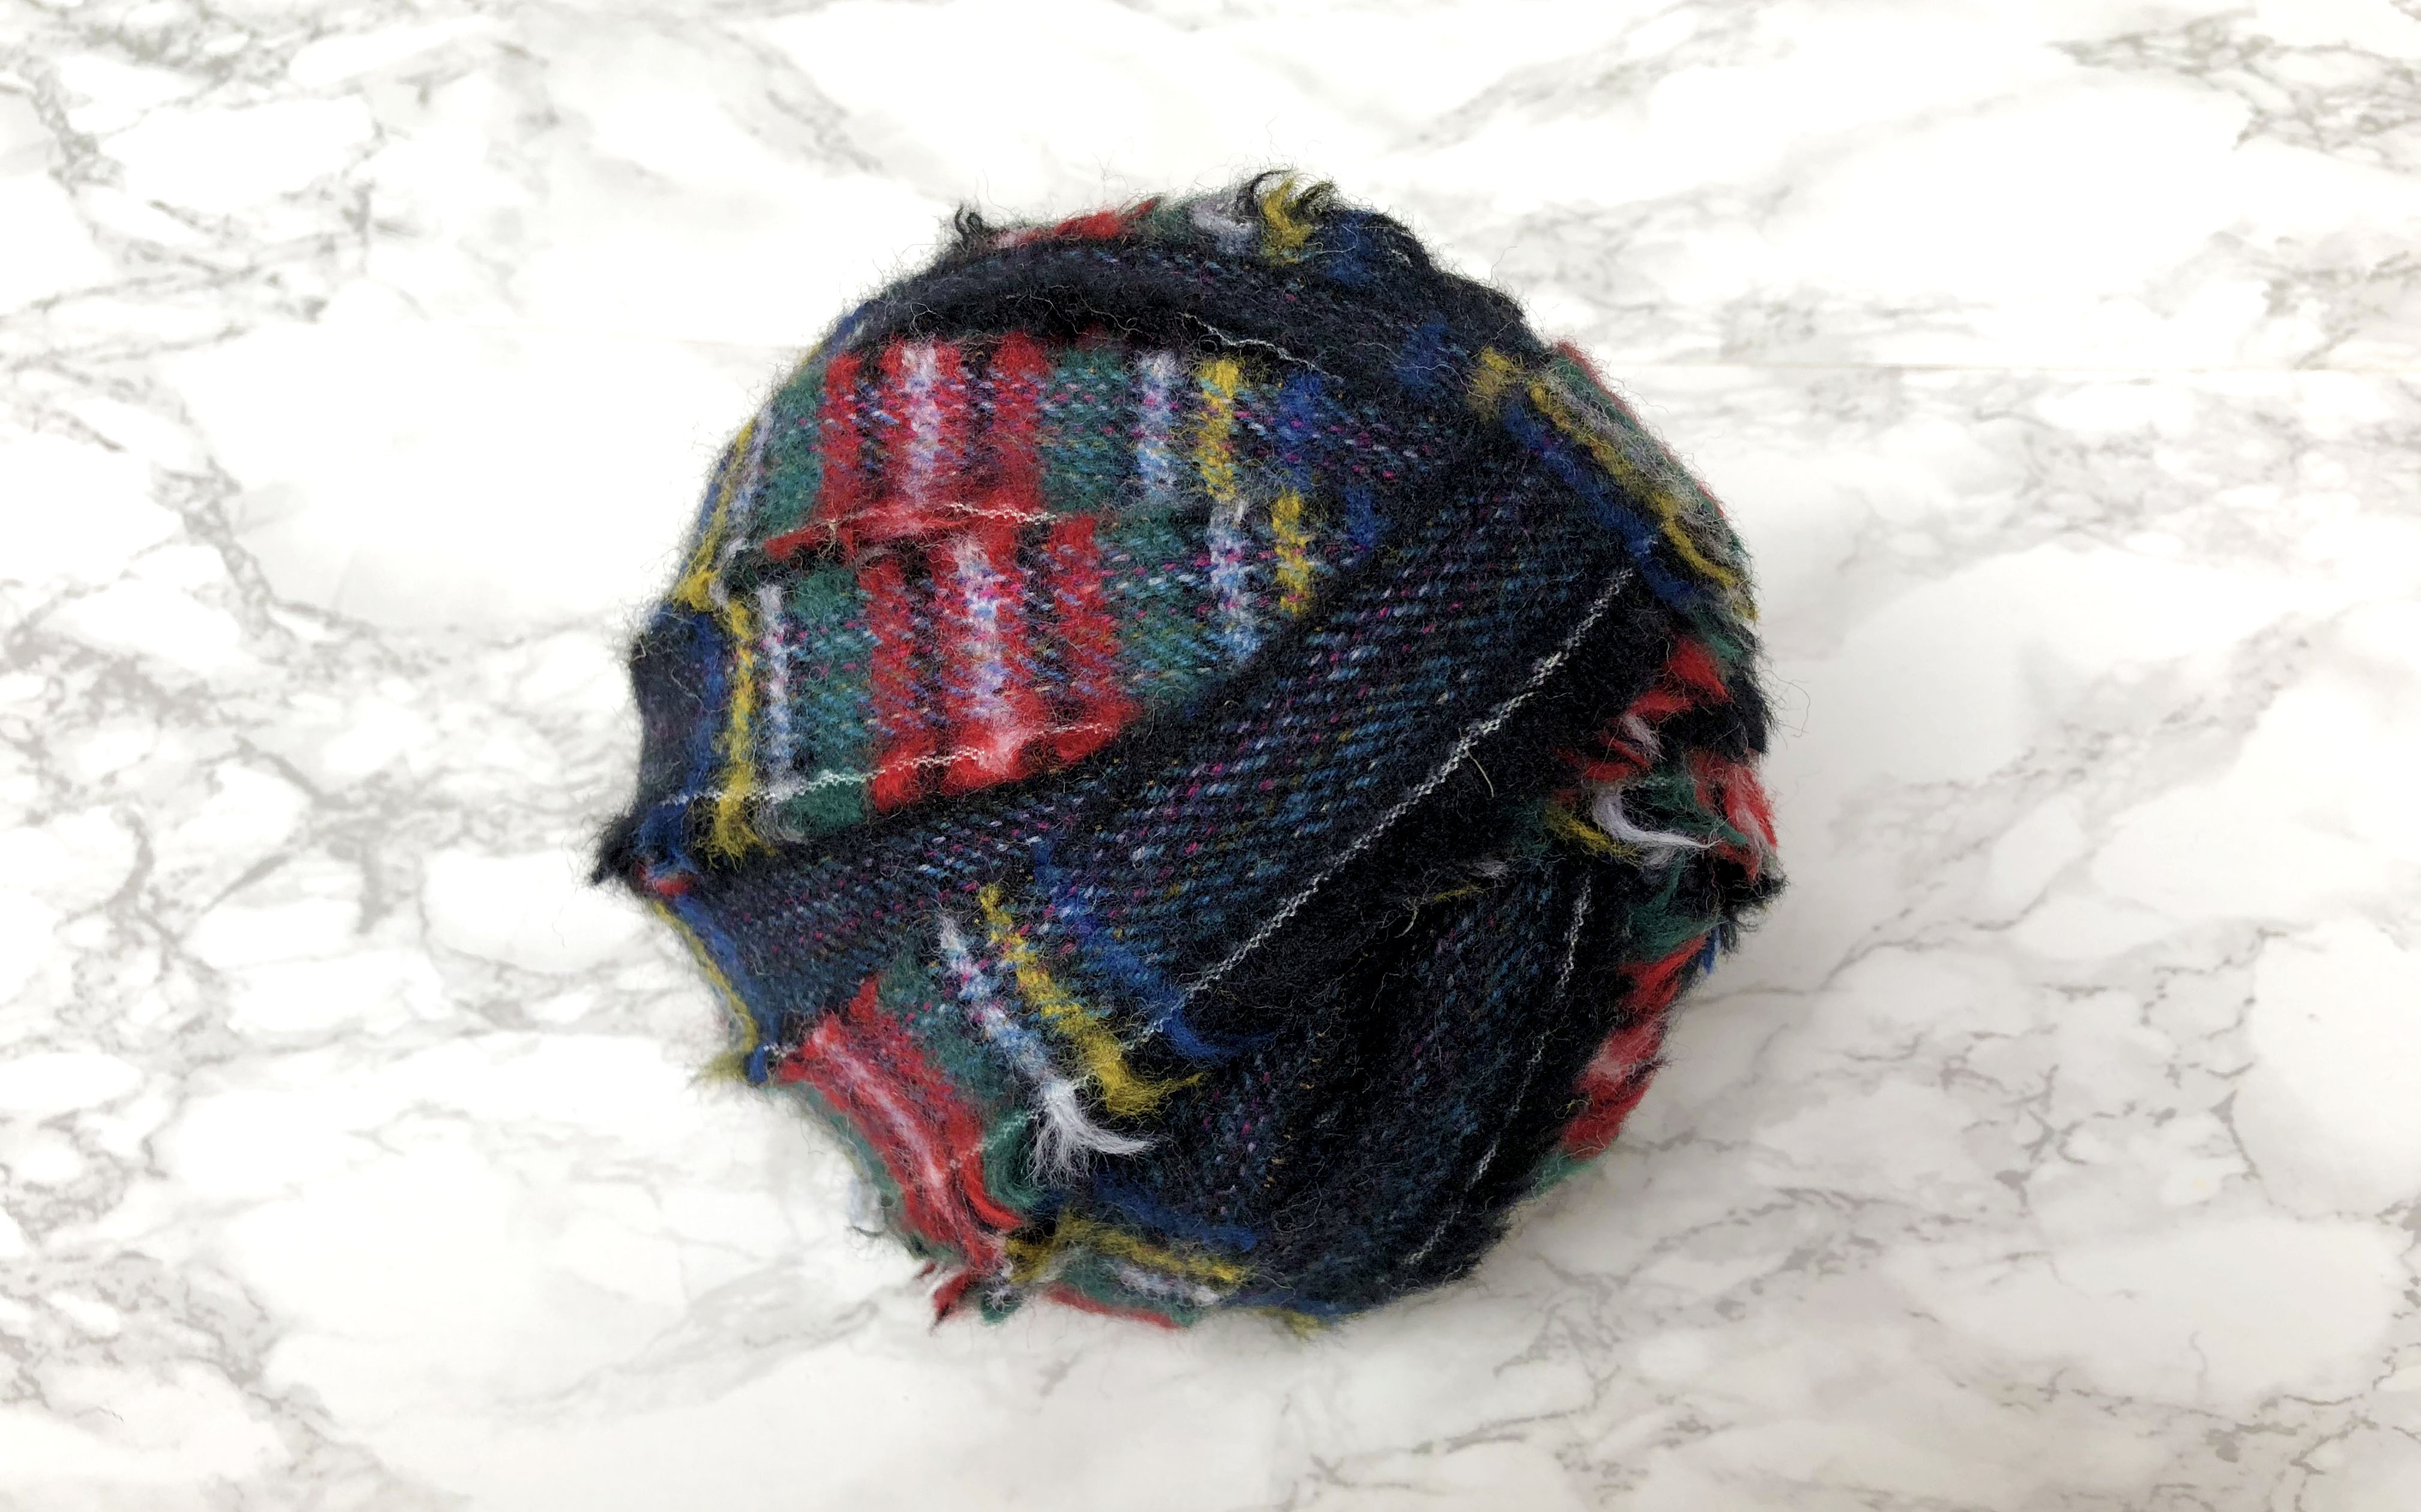 Dark tartan blanket yarn for making rag rugs 100% wool